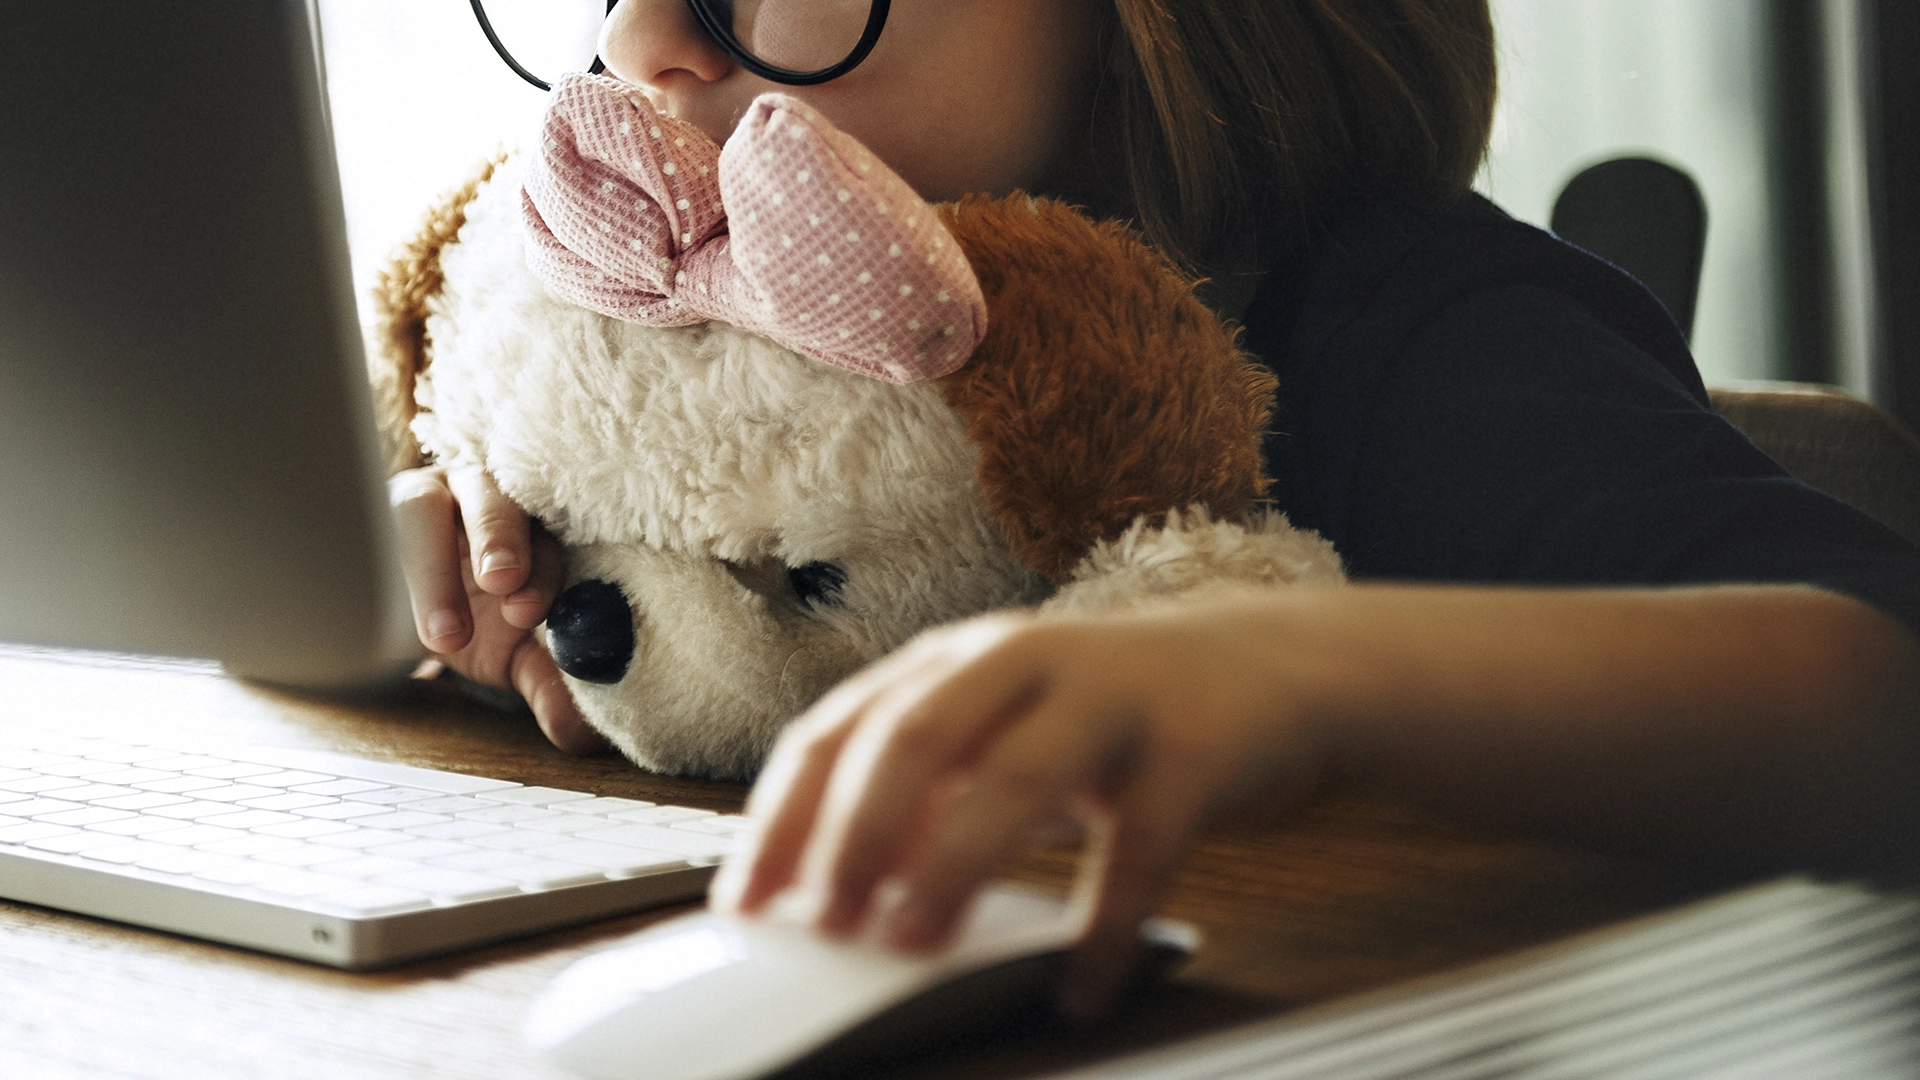 Menina de óculos abraçando um urso de peluche enquanto utiliza um computador.